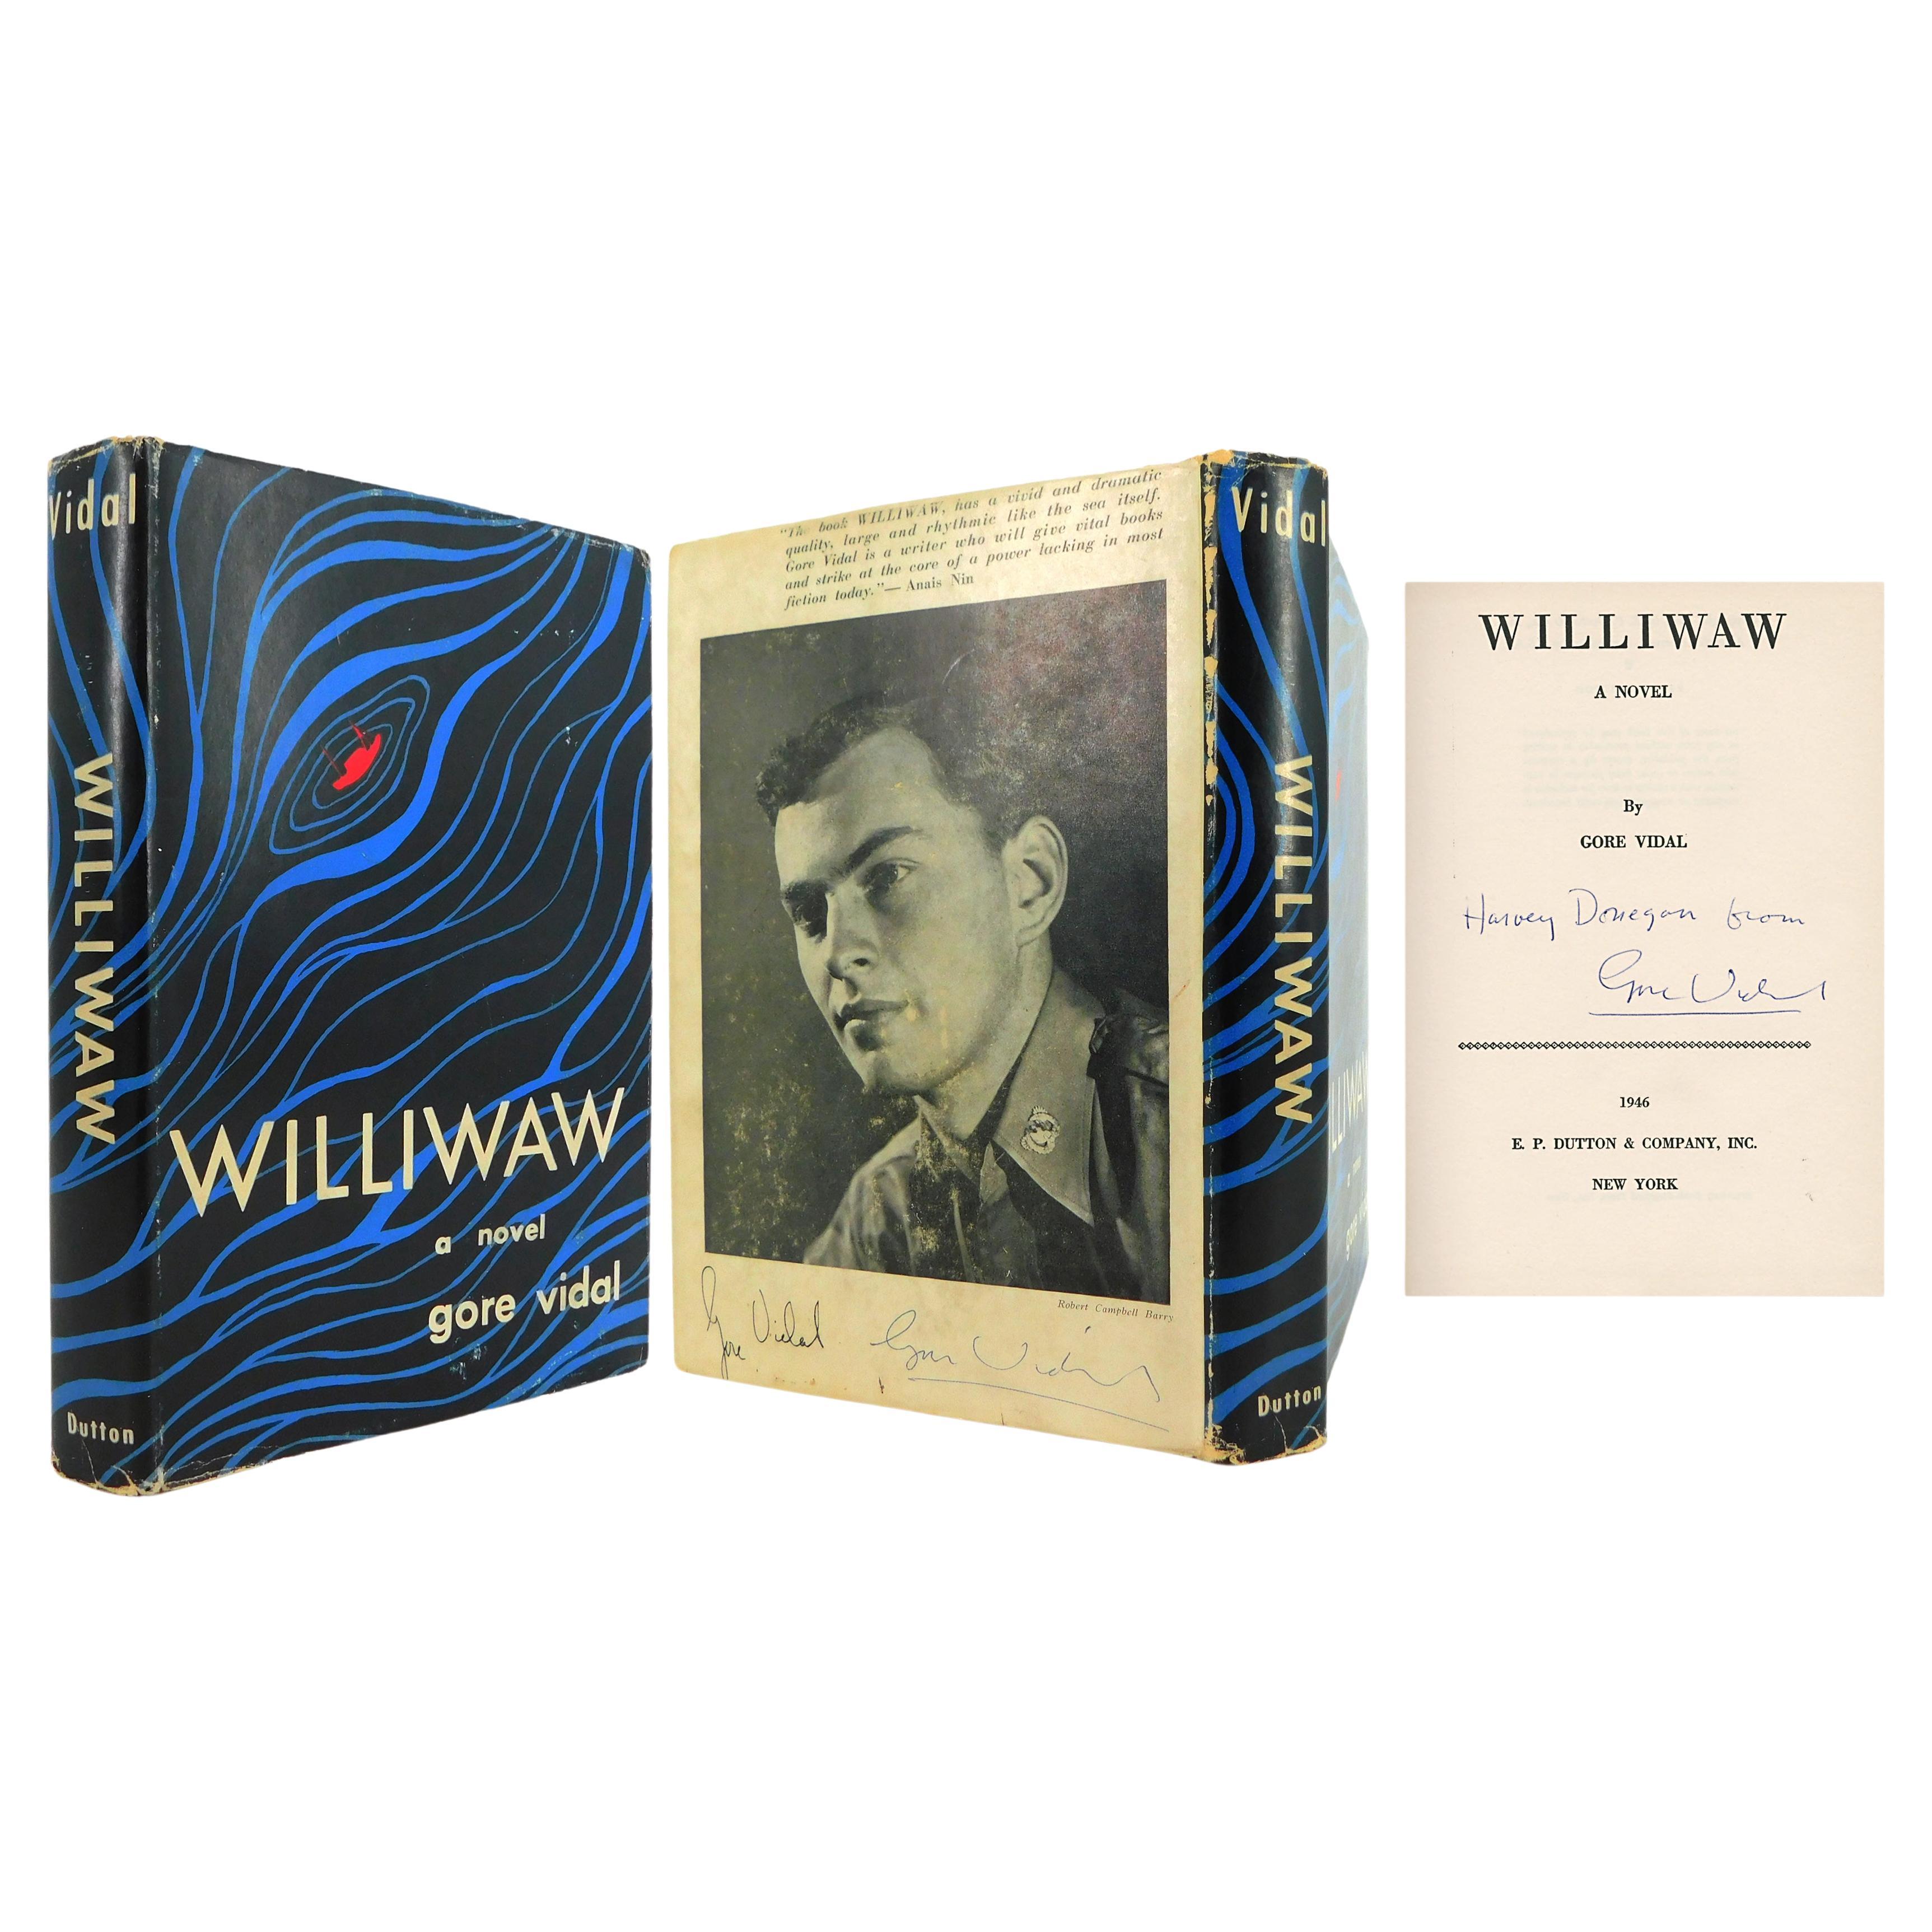 Der erste Roman von GORE VIDAL, „Williwaw“, VERKAUFT FIRST EDITION